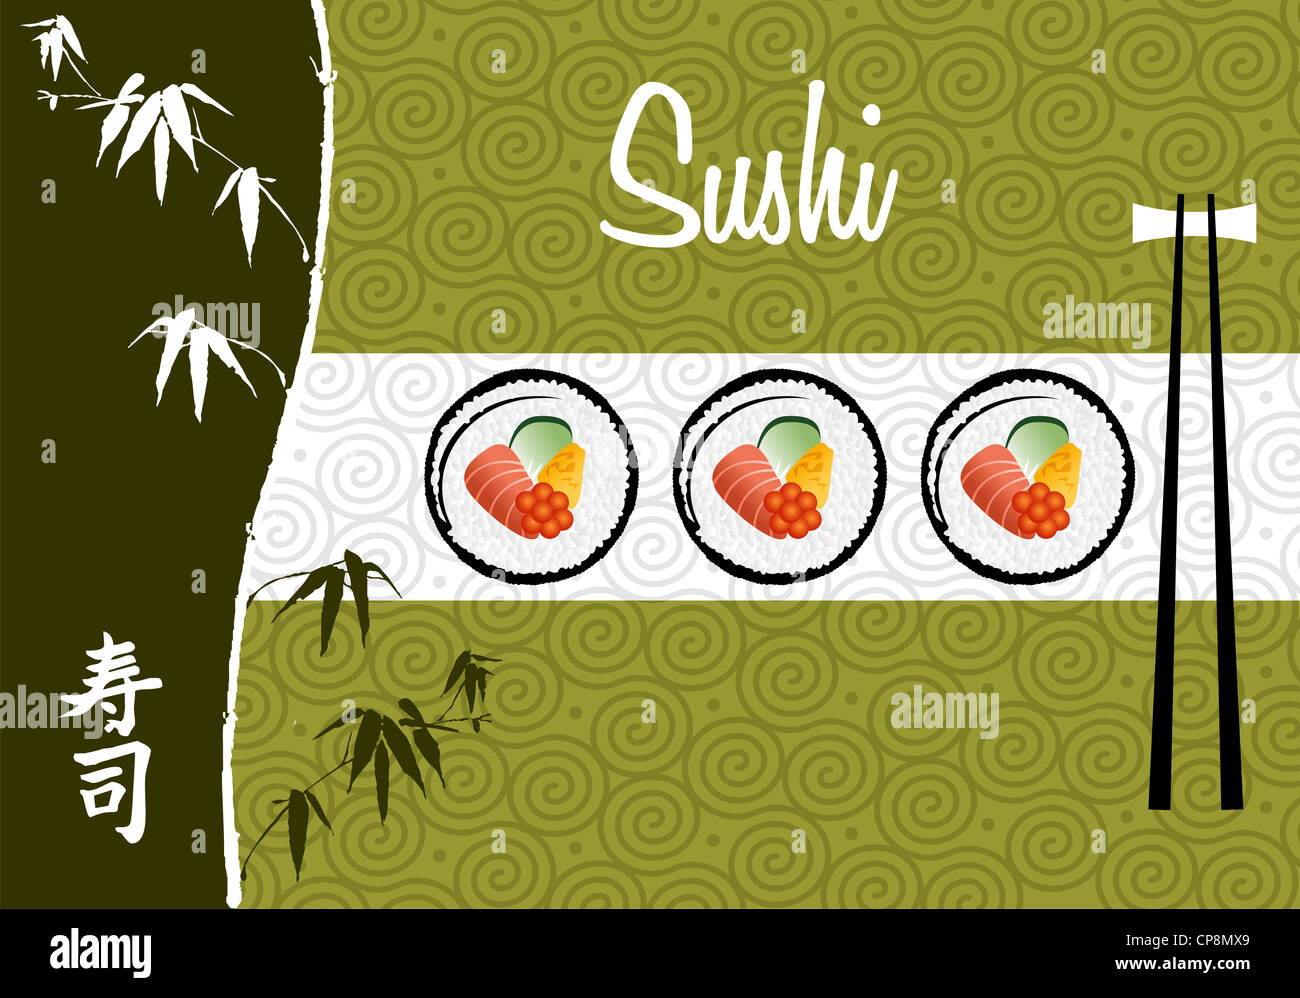 Handschriftliche Sushi-Banner über weißem und grünem Hintergrund Illustration. Vektor-Datei geschichtet für einfache Handhabung und individuelle Farbgebung. Stockfoto